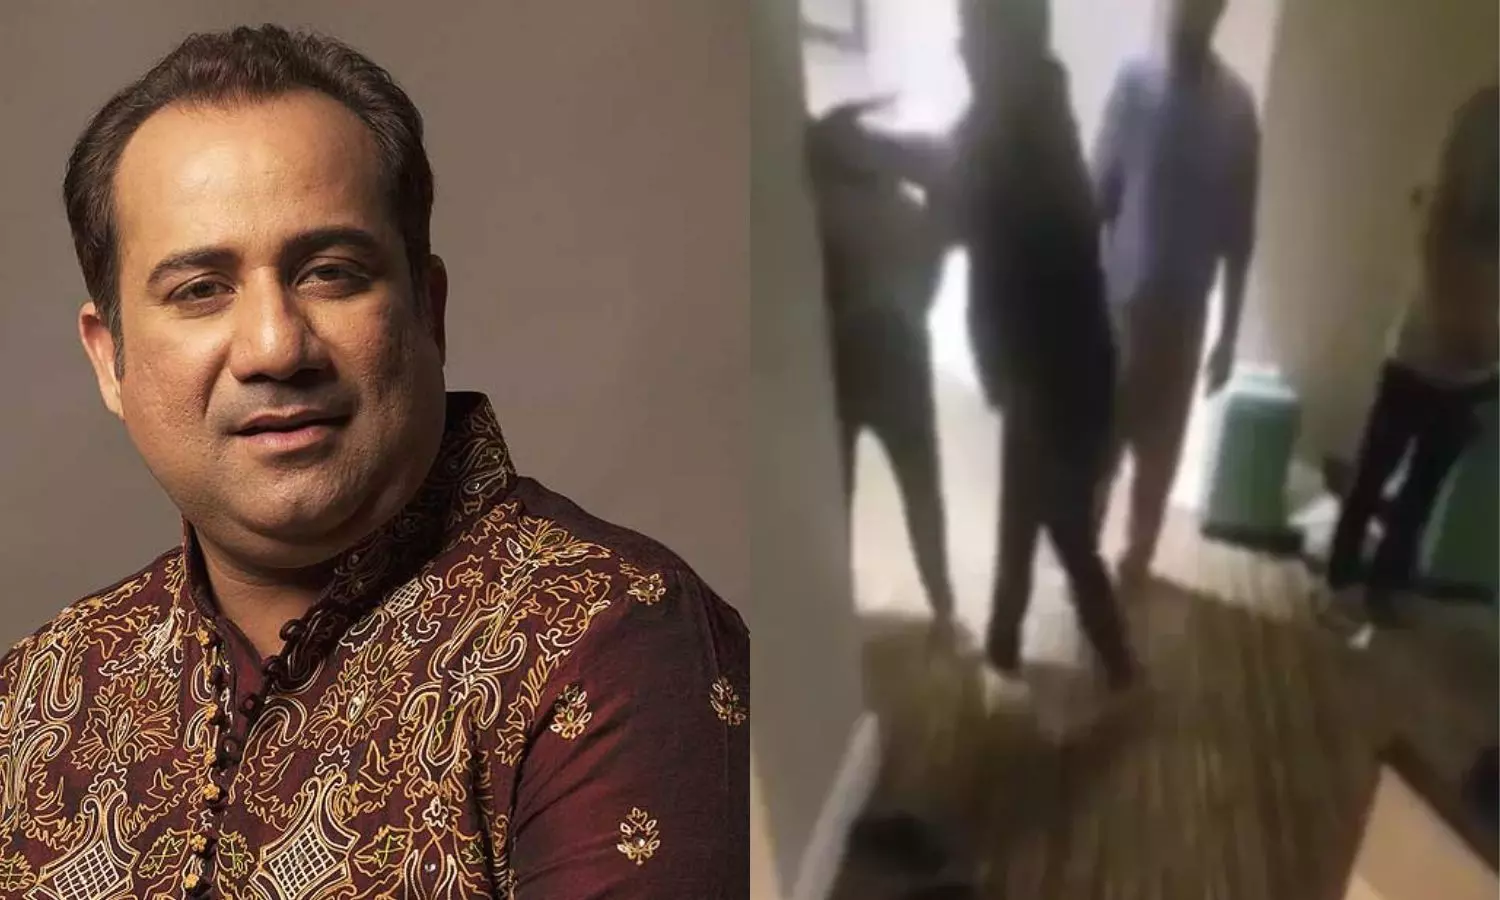 वायरल हुआ राहत फतेह अली खान का शर्मनाक वीडियो, नौकर को चप्पल से पीटते दिखे पाकिस्तानी सिंगर